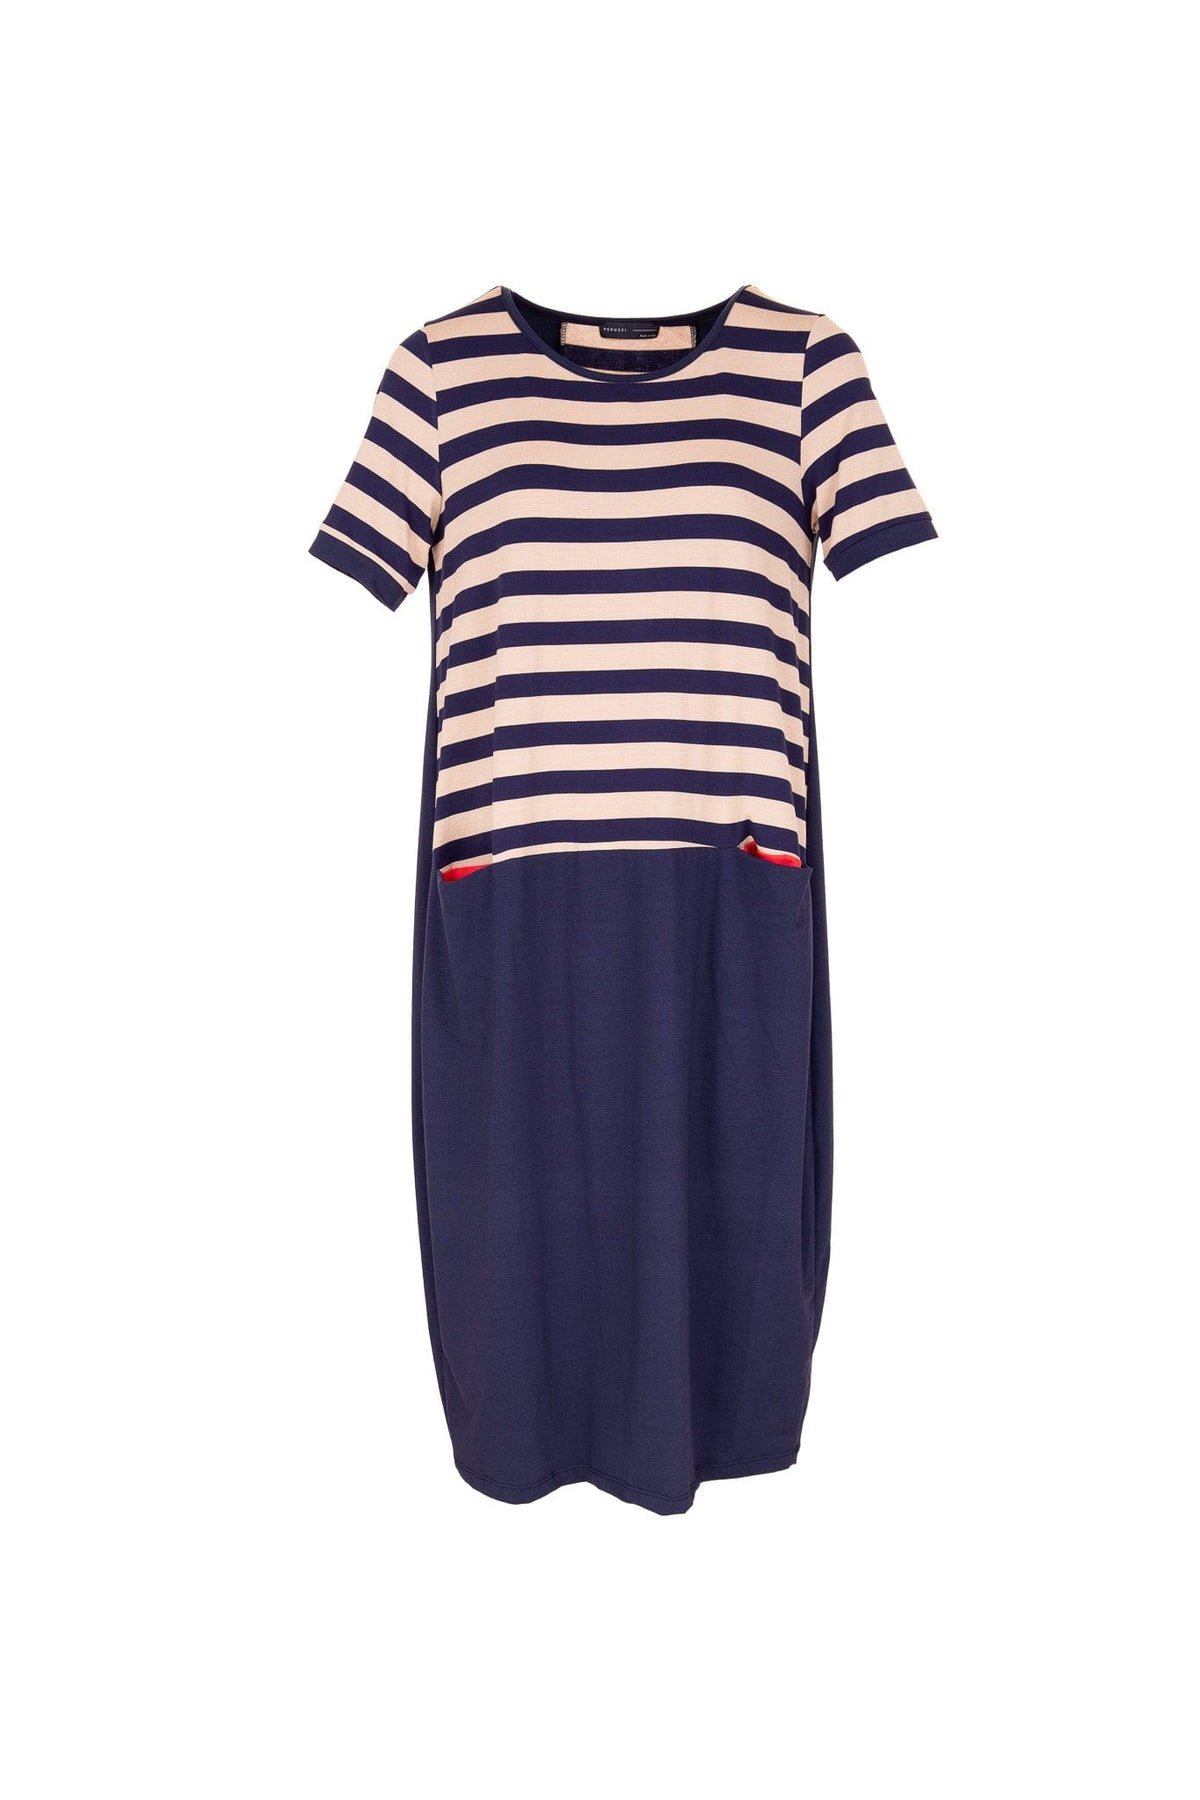 Peruzzi Stripe Dress with Contrast Pocket